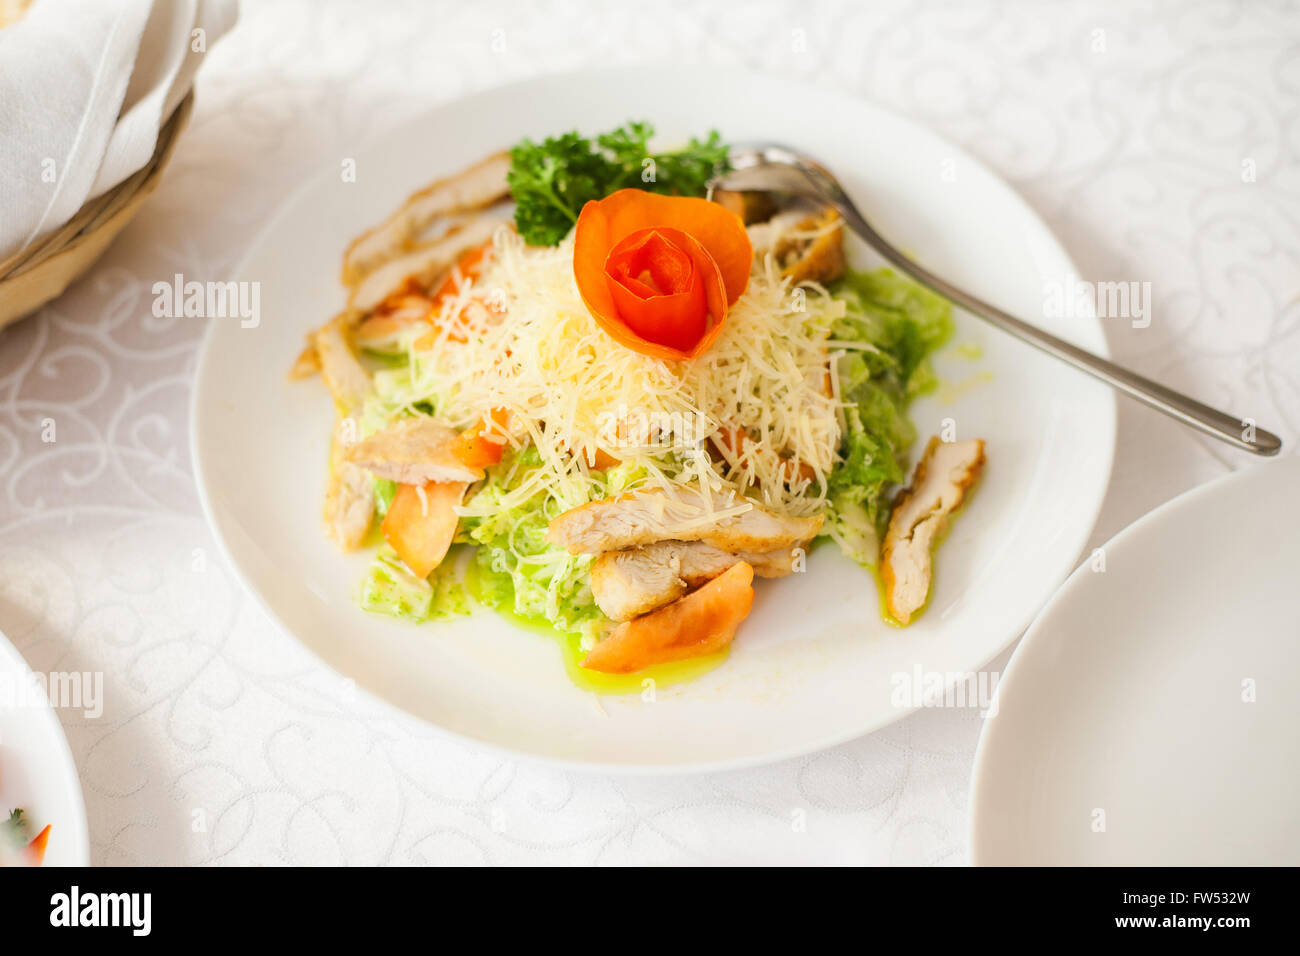 Portion gesunden Salat Blätter frischen Salat, Käse, Scheiben von Fleisch und Tomaten. Stockfoto